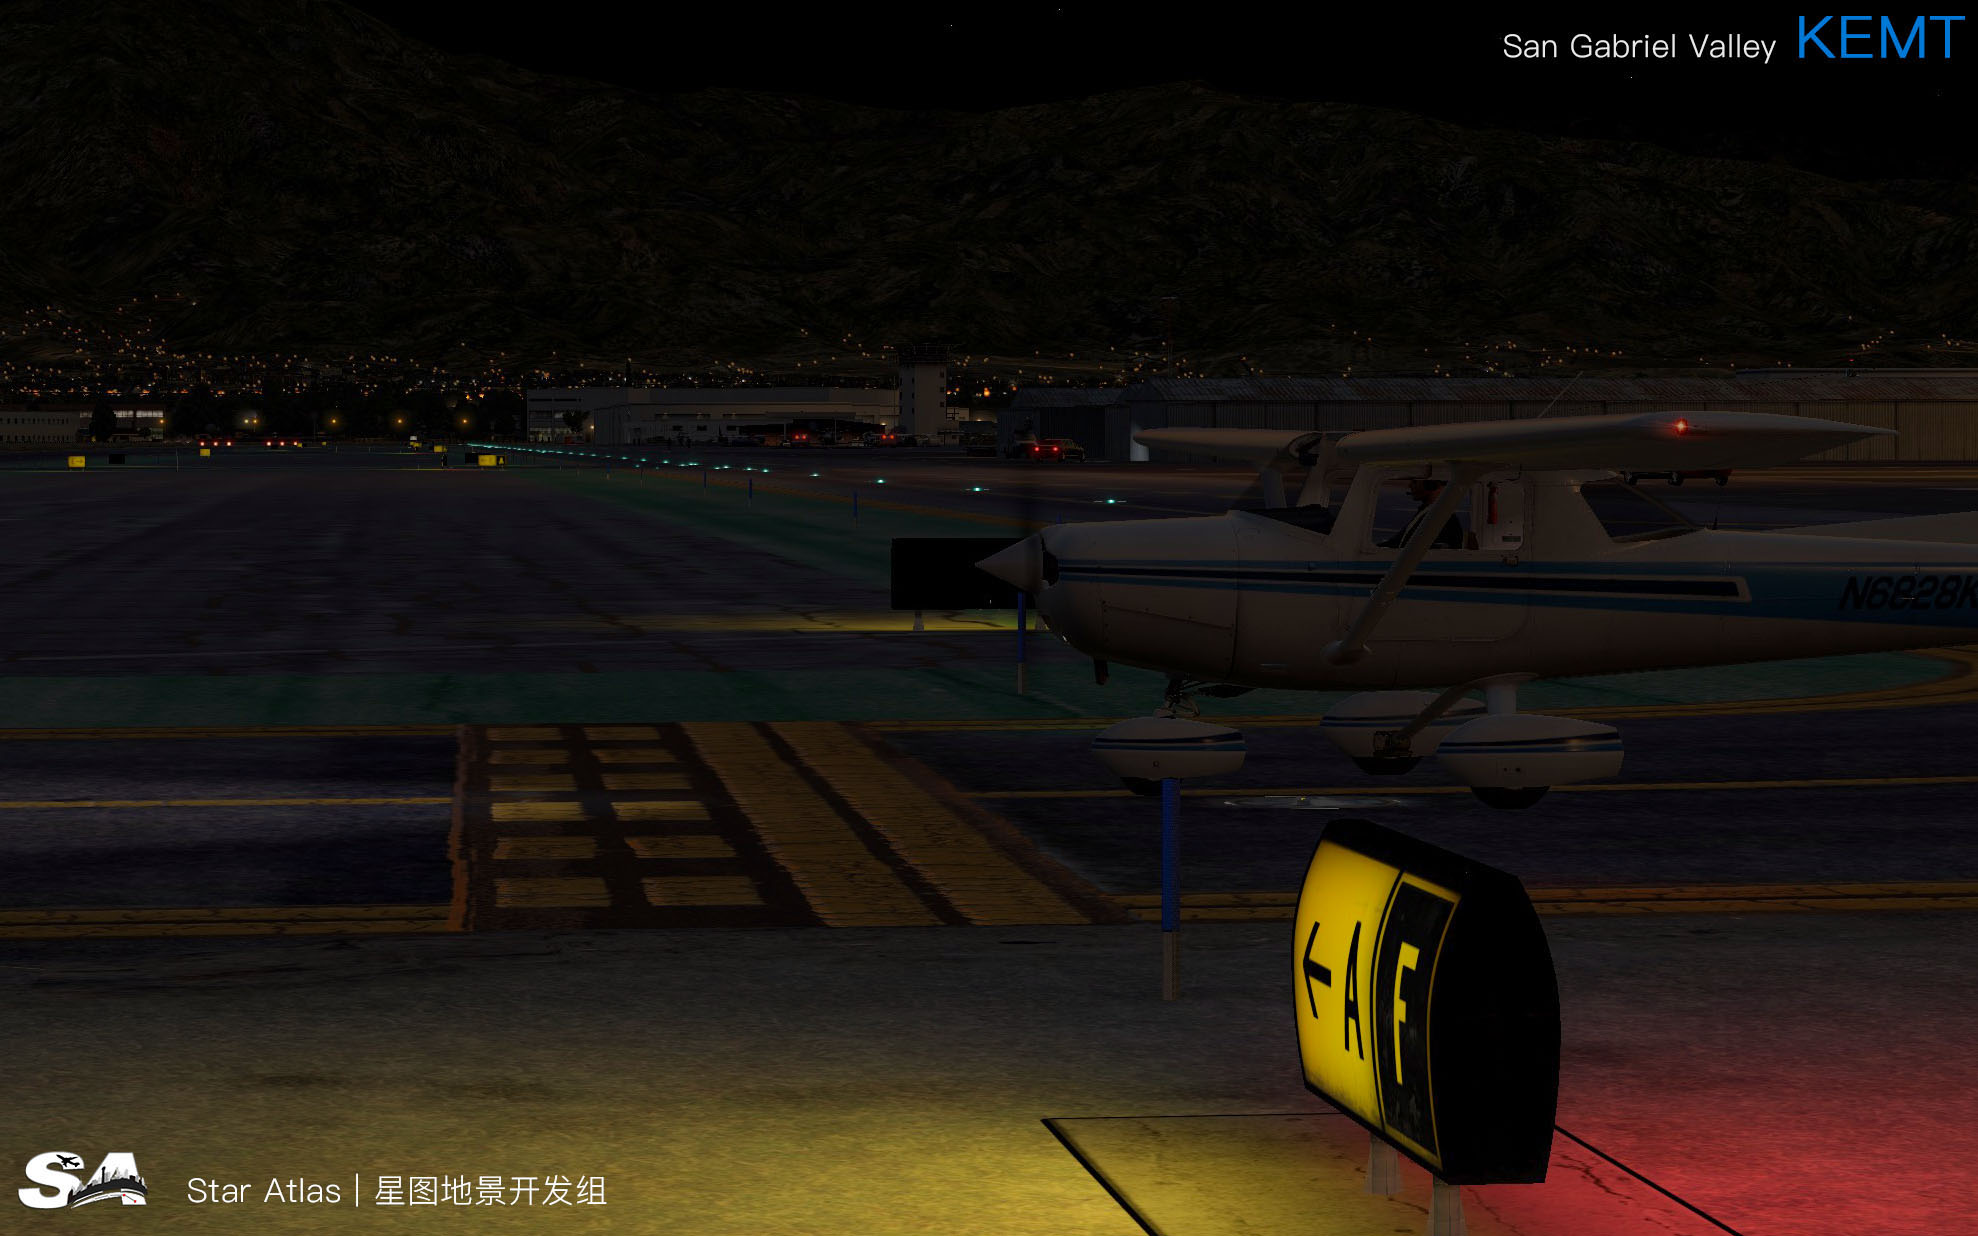 【X-Plane】KEMT-圣盖博谷机场 HD 1.0-1074 